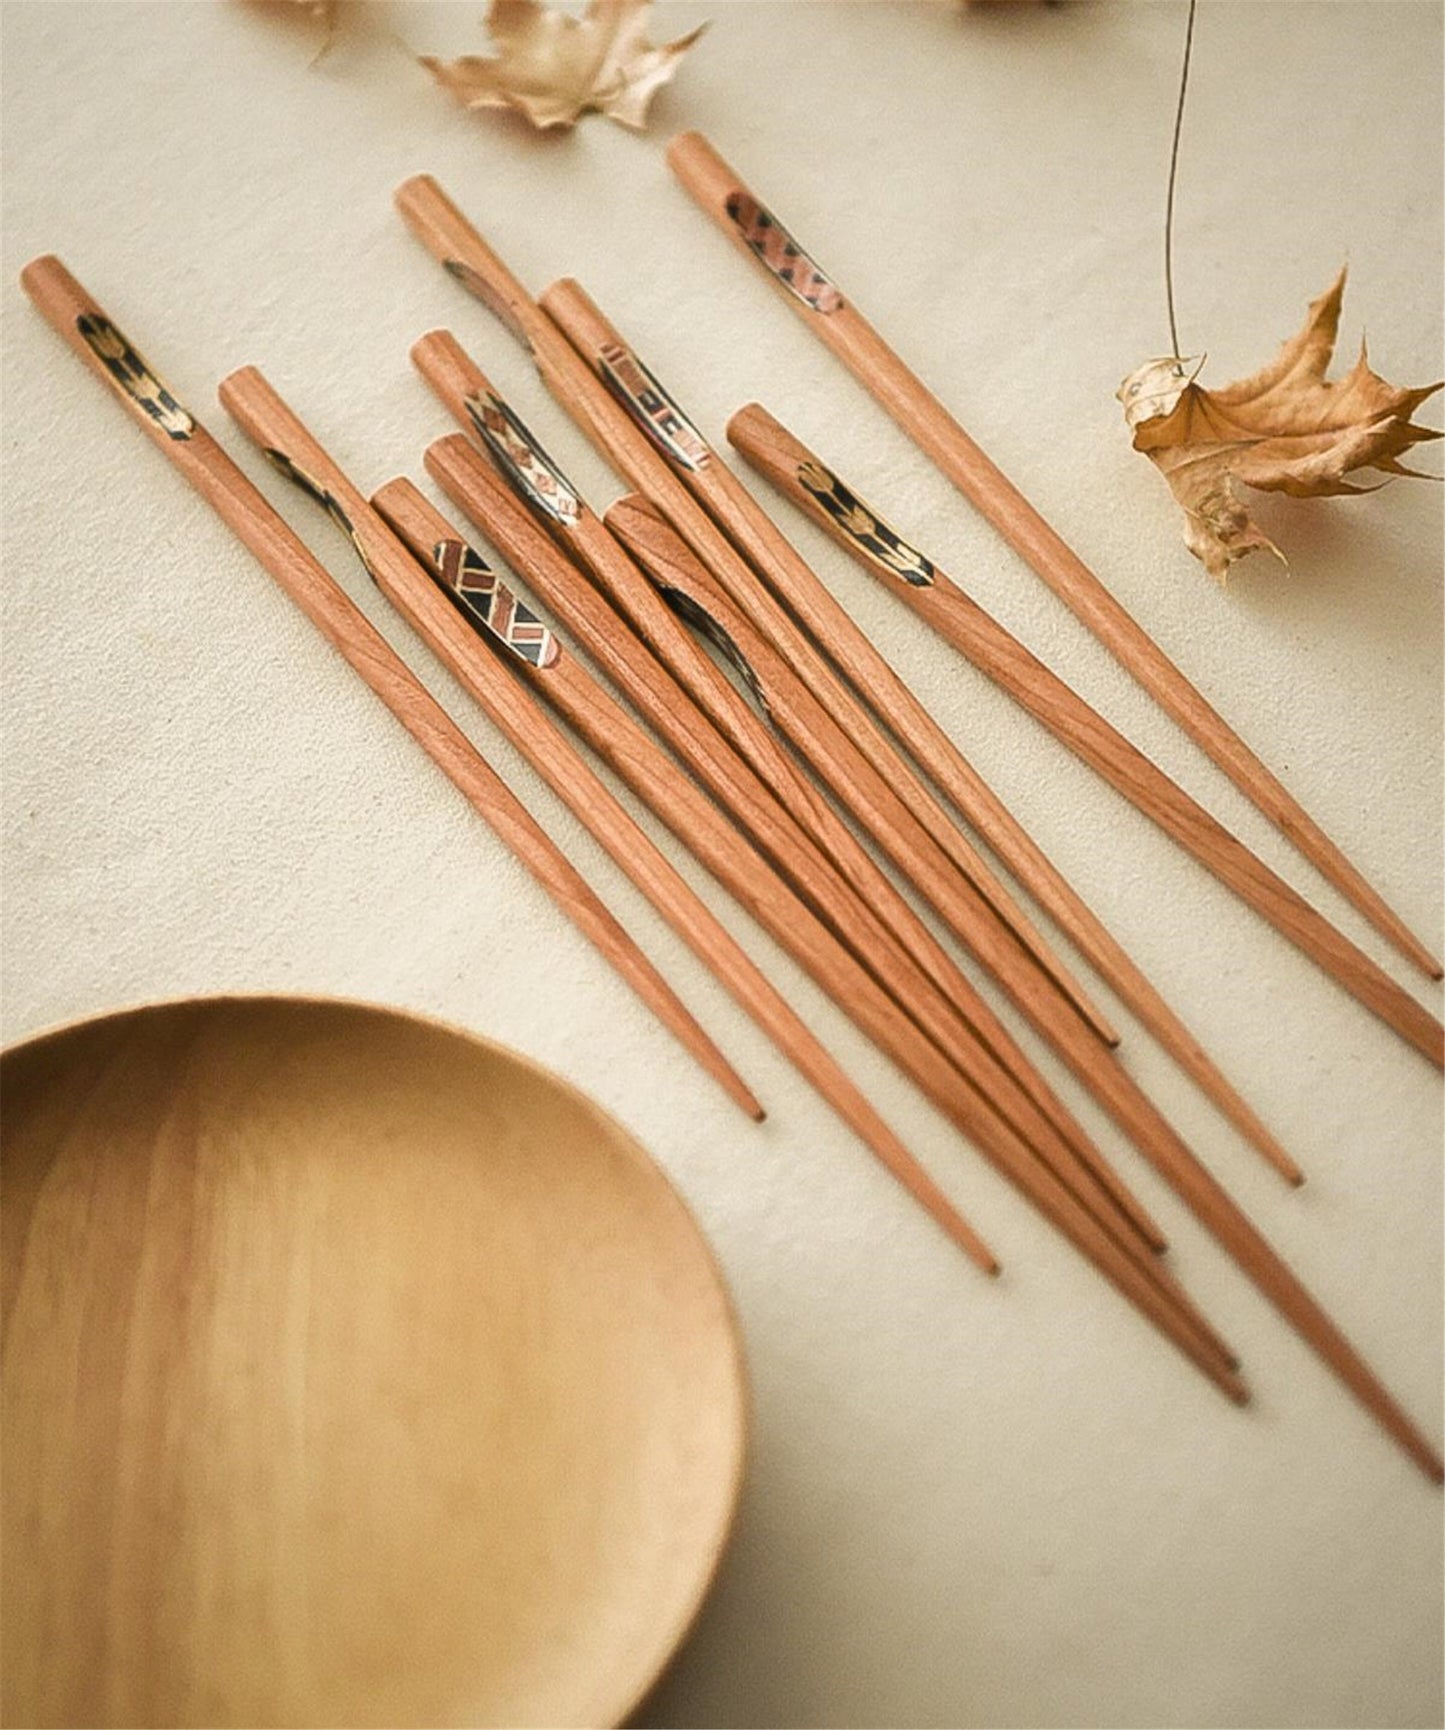 Best seller - Black walnut chopsticks, cherry wood chopsticks